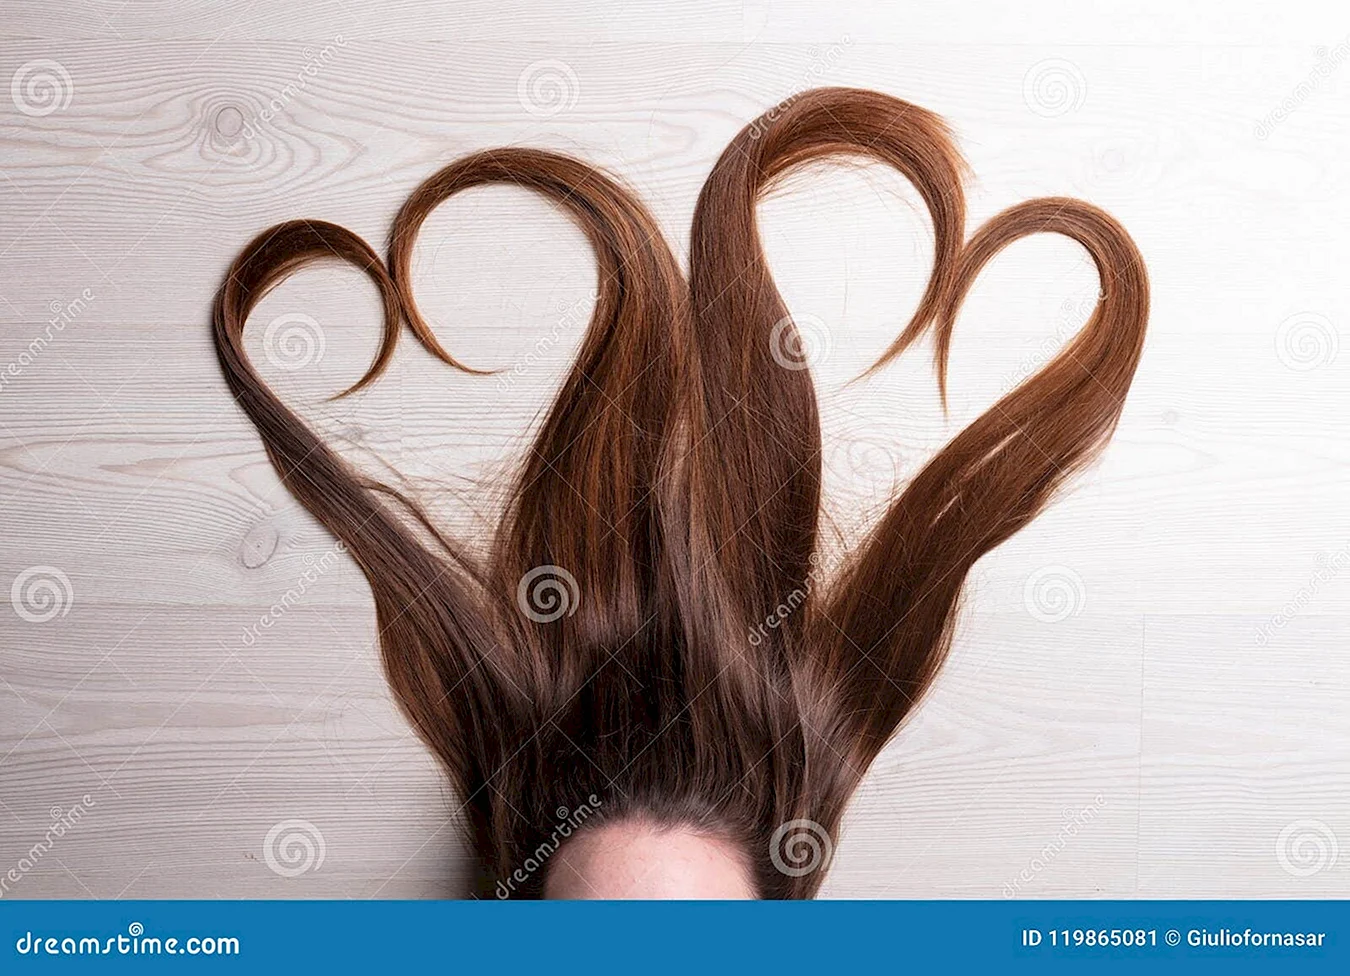 Волосы сердечком